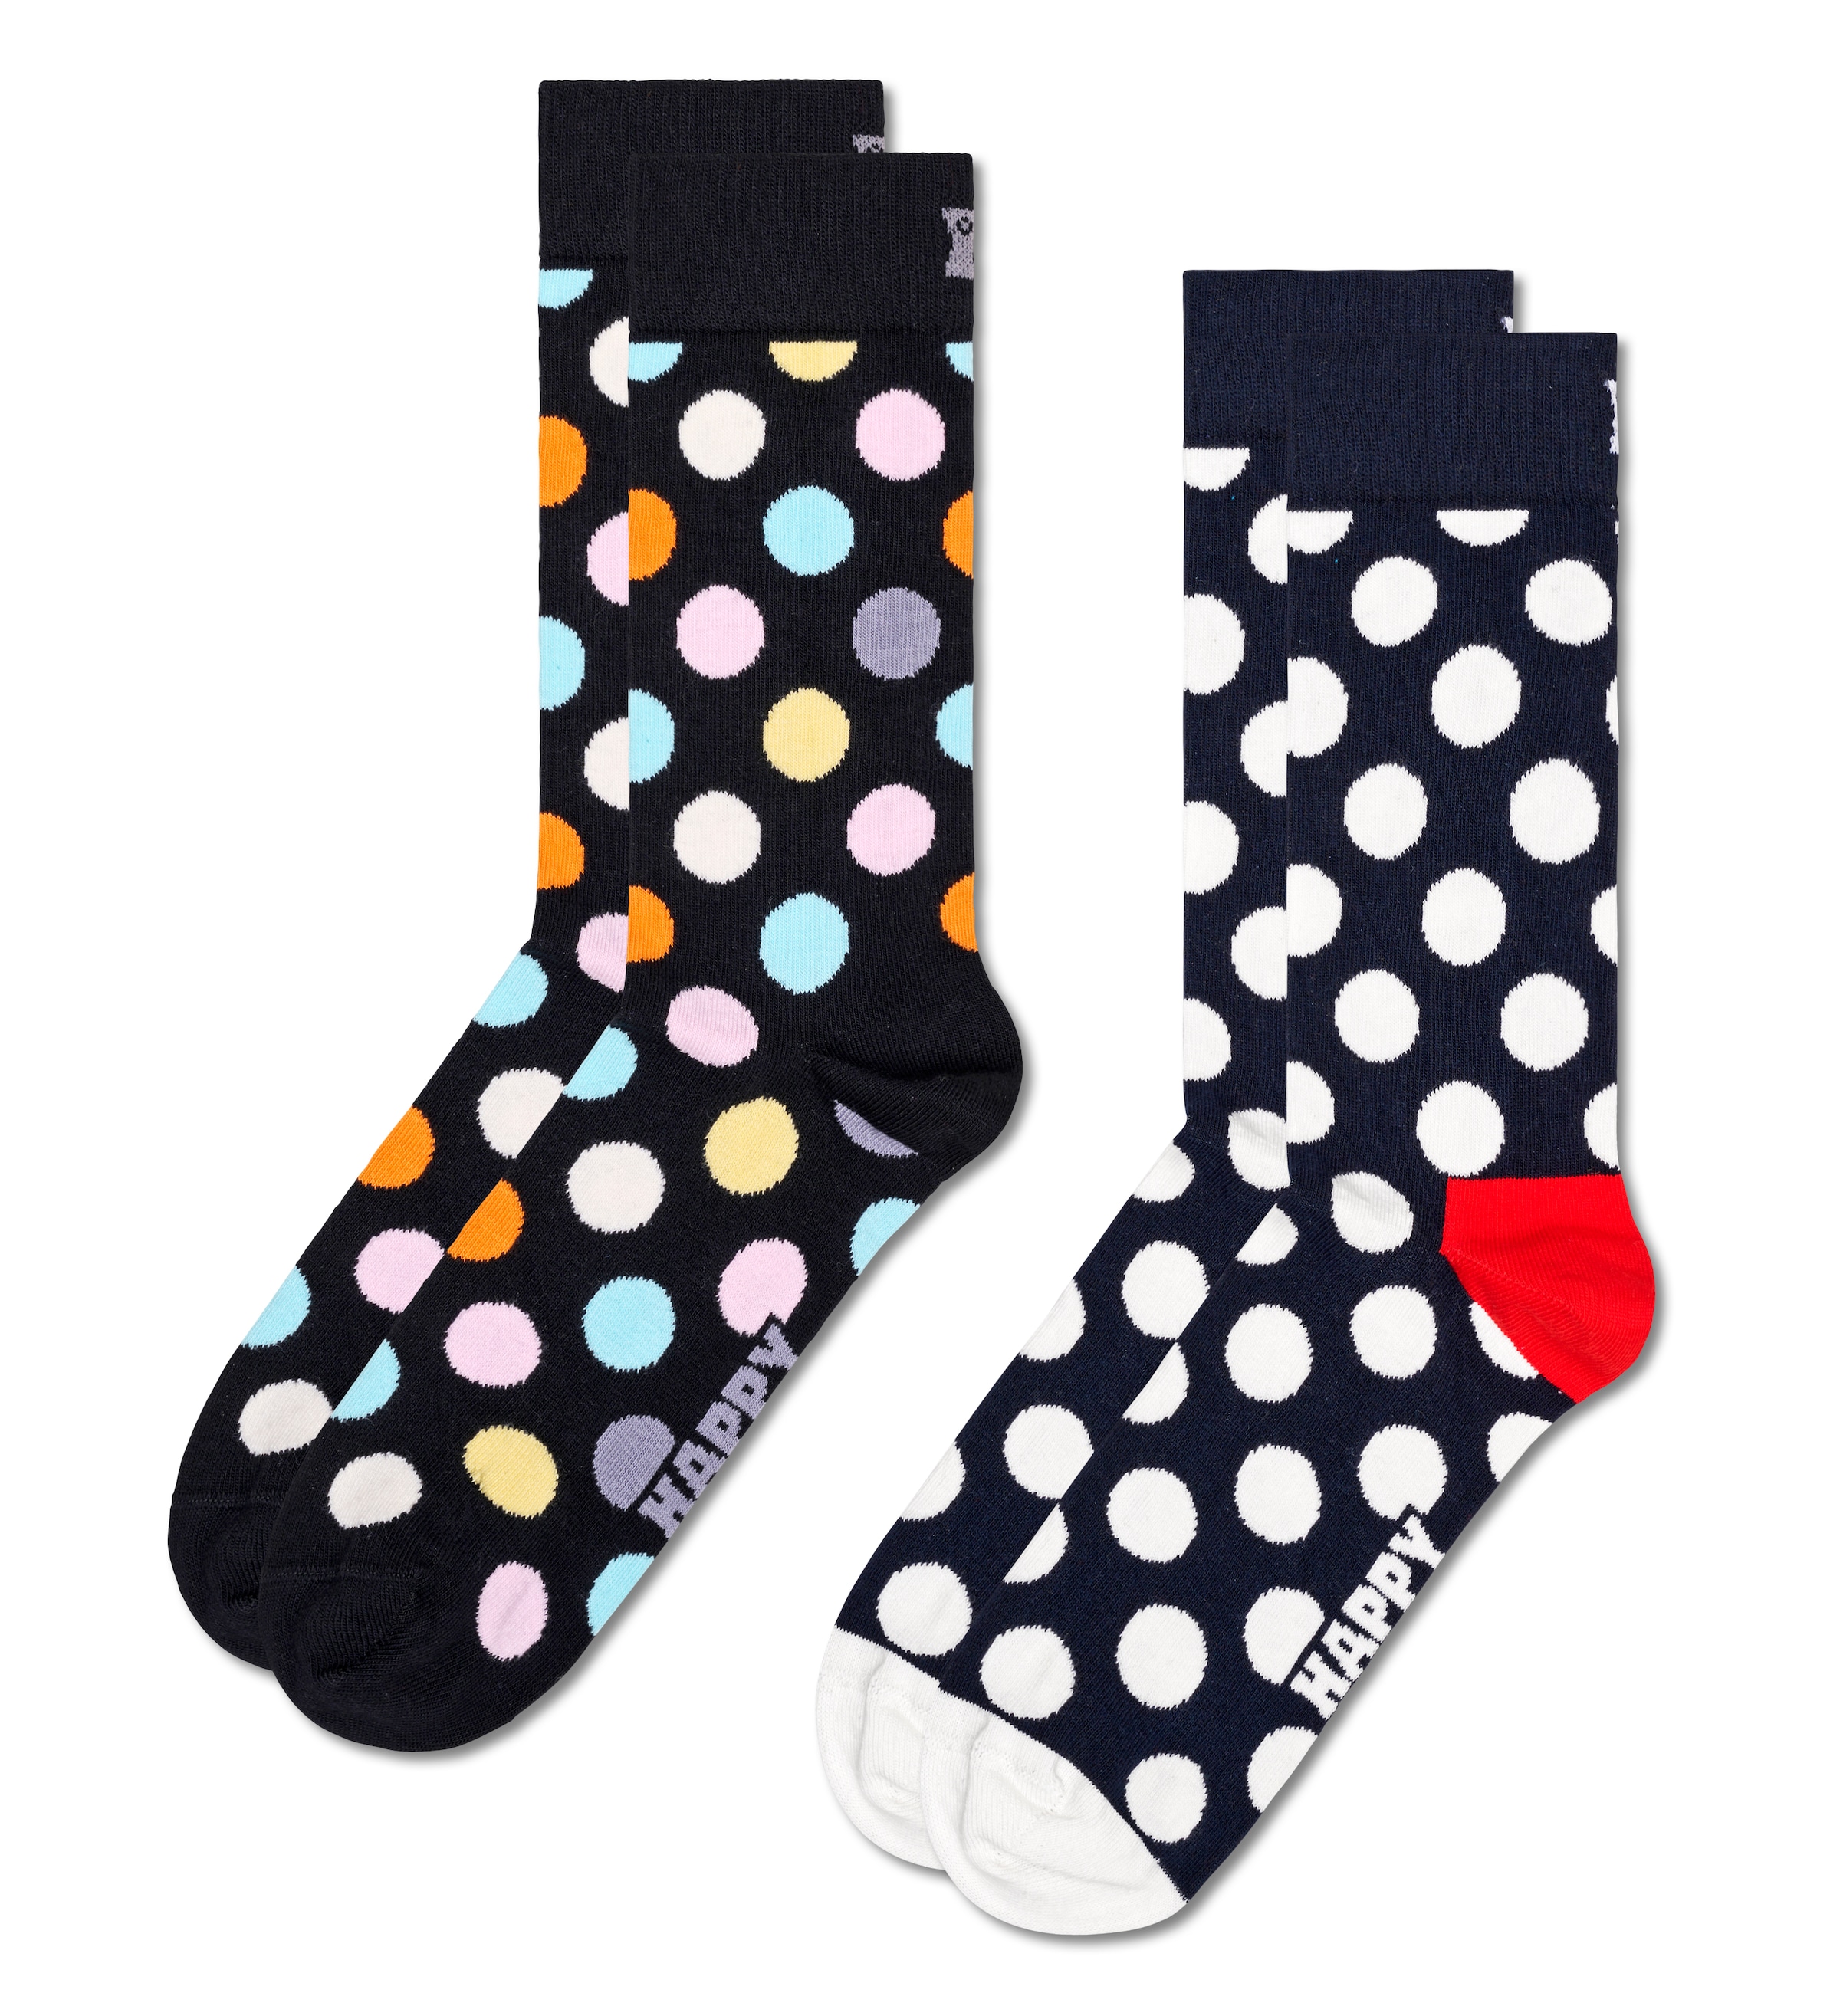 Auswahl Socks in OTTO bestellen Happy bei großer